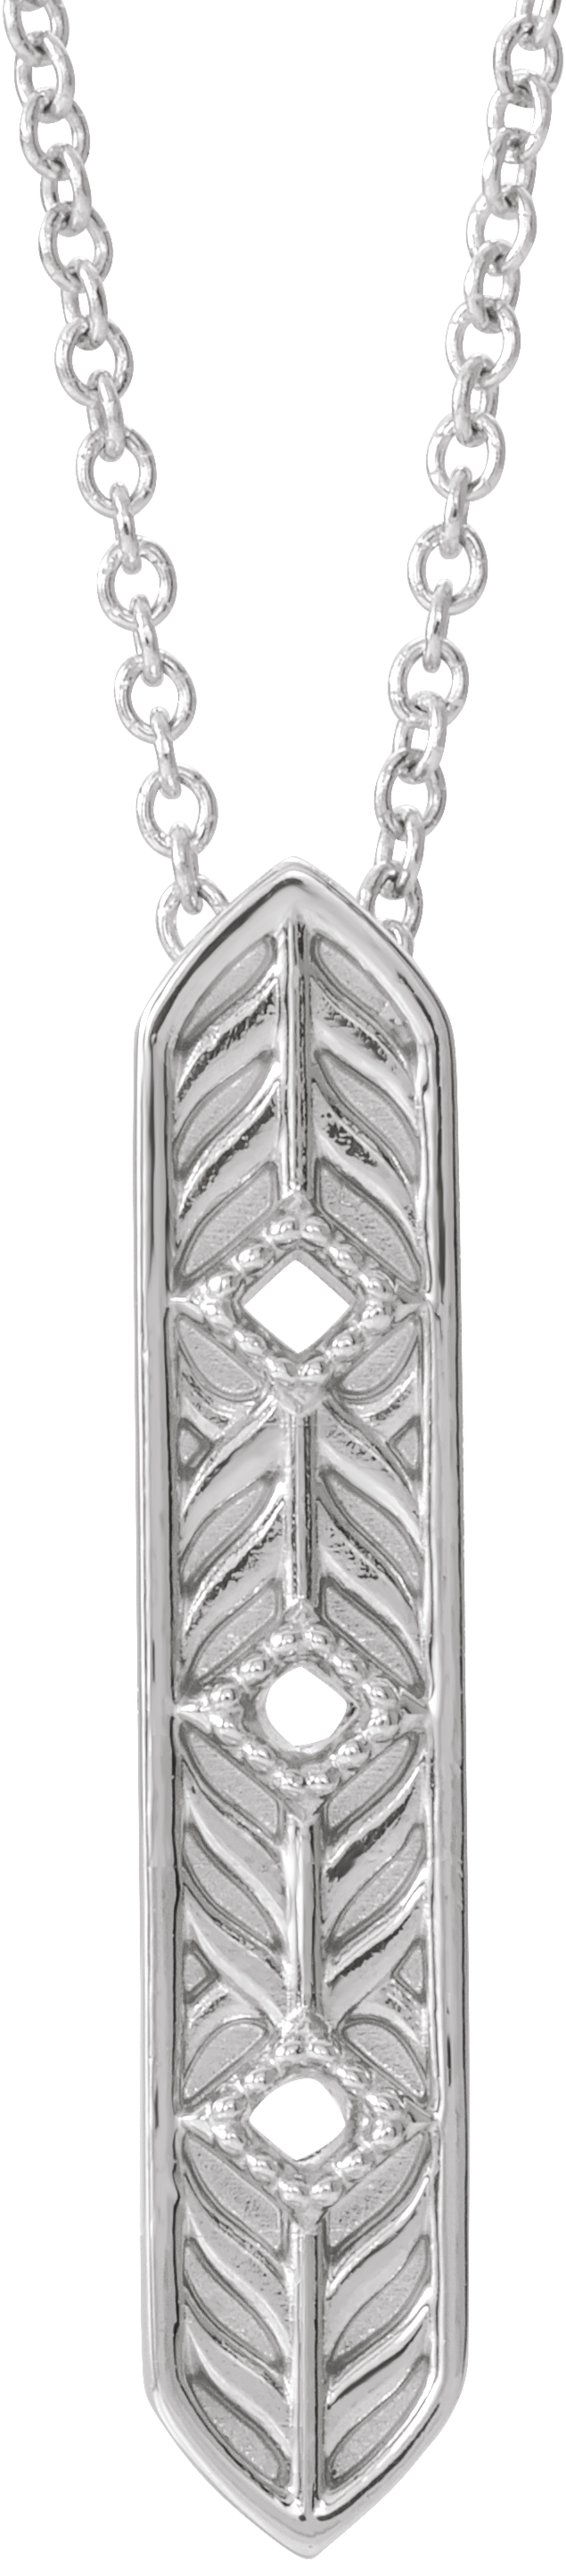 Sterling Silver Vintage-Inspired Vertical Bar 16" Necklace  